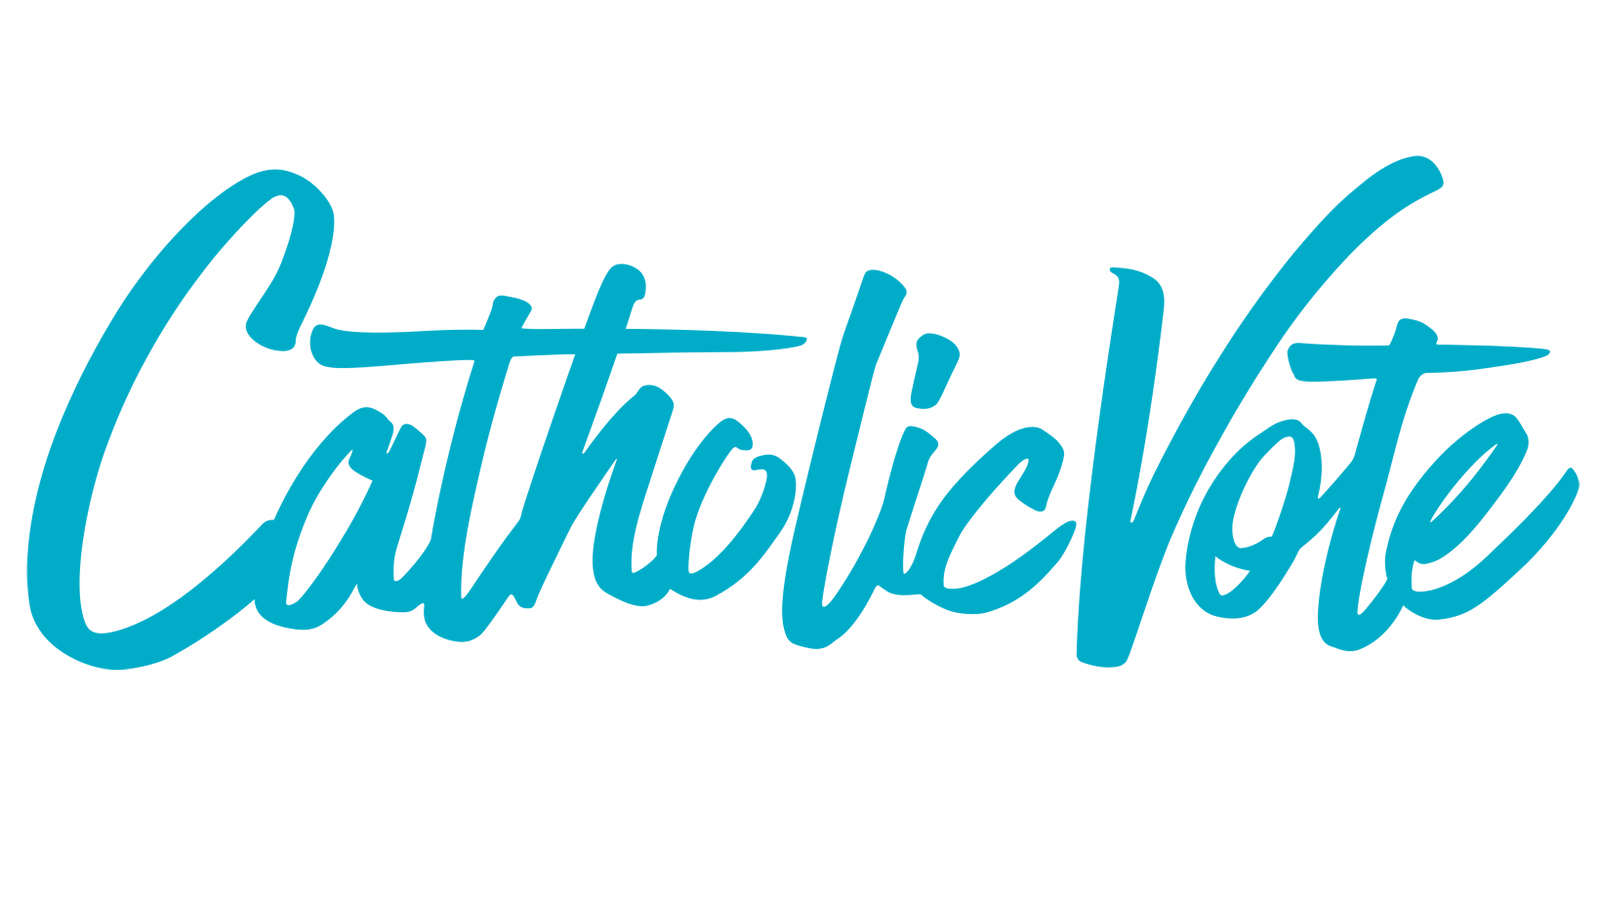 CatholicVote logo. Courtesy image